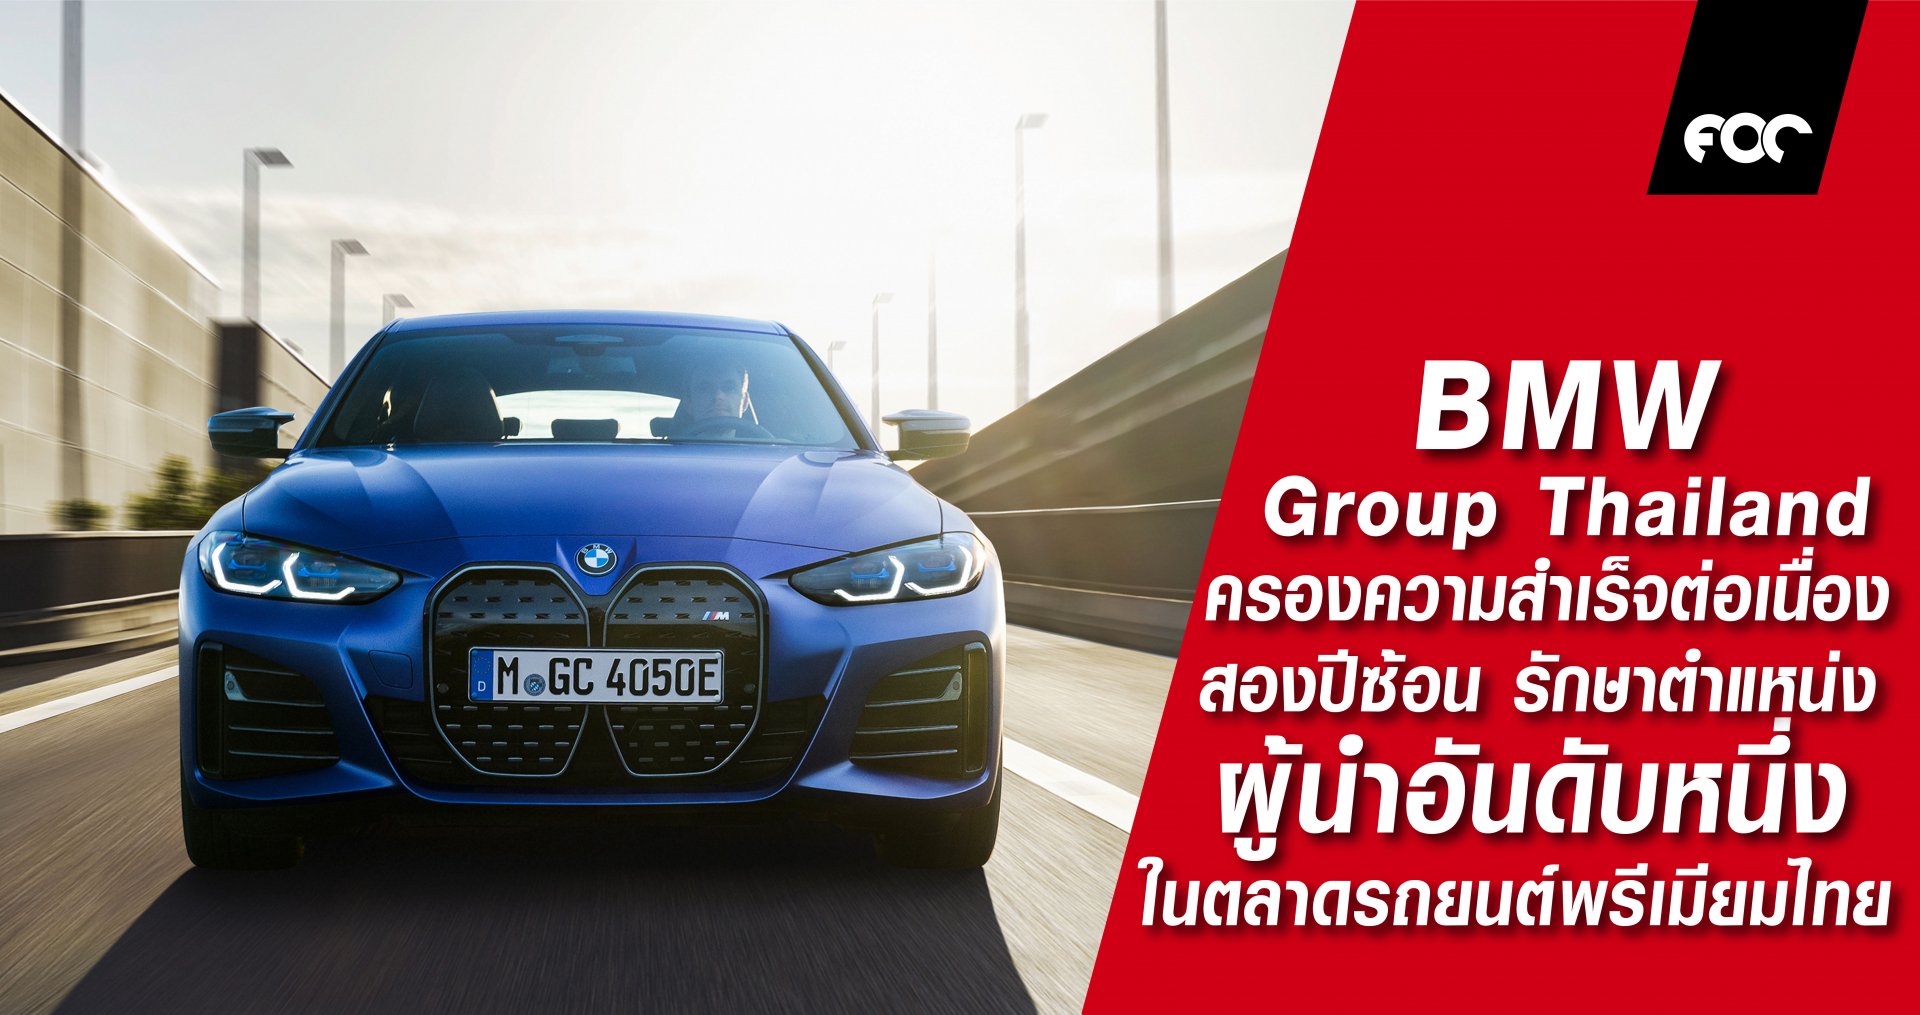 บีเอ็มดับเบิลยู กรุ๊ป ประเทศไทย ครองความสำเร็จต่อเนื่องสองปีซ้อน รักษาตำแหน่งผู้นำอันดับหนึ่งในตลาดรถยนต์พรีเมียมไทย เดินหน้าสู่ยนตรกรรมไฟฟ้า และการสร้างความพึงพอใจแก่ผู้บริโภค